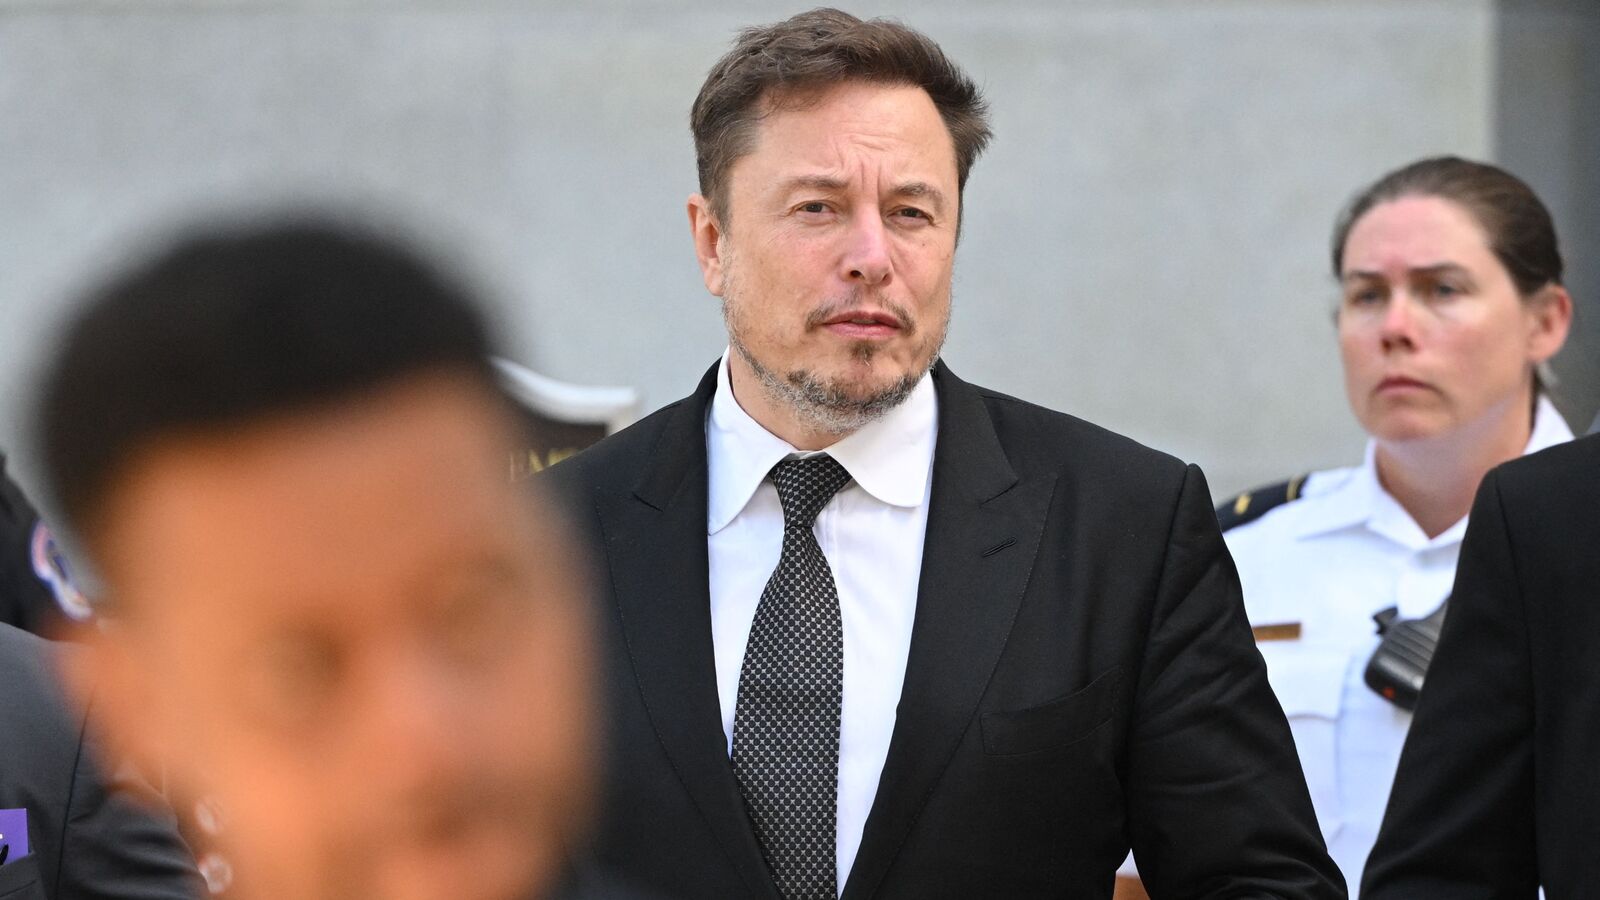 Presiden mengatakan Elon Musk masih bernegosiasi agar Tesla bisa berinvestasi di Indonesia